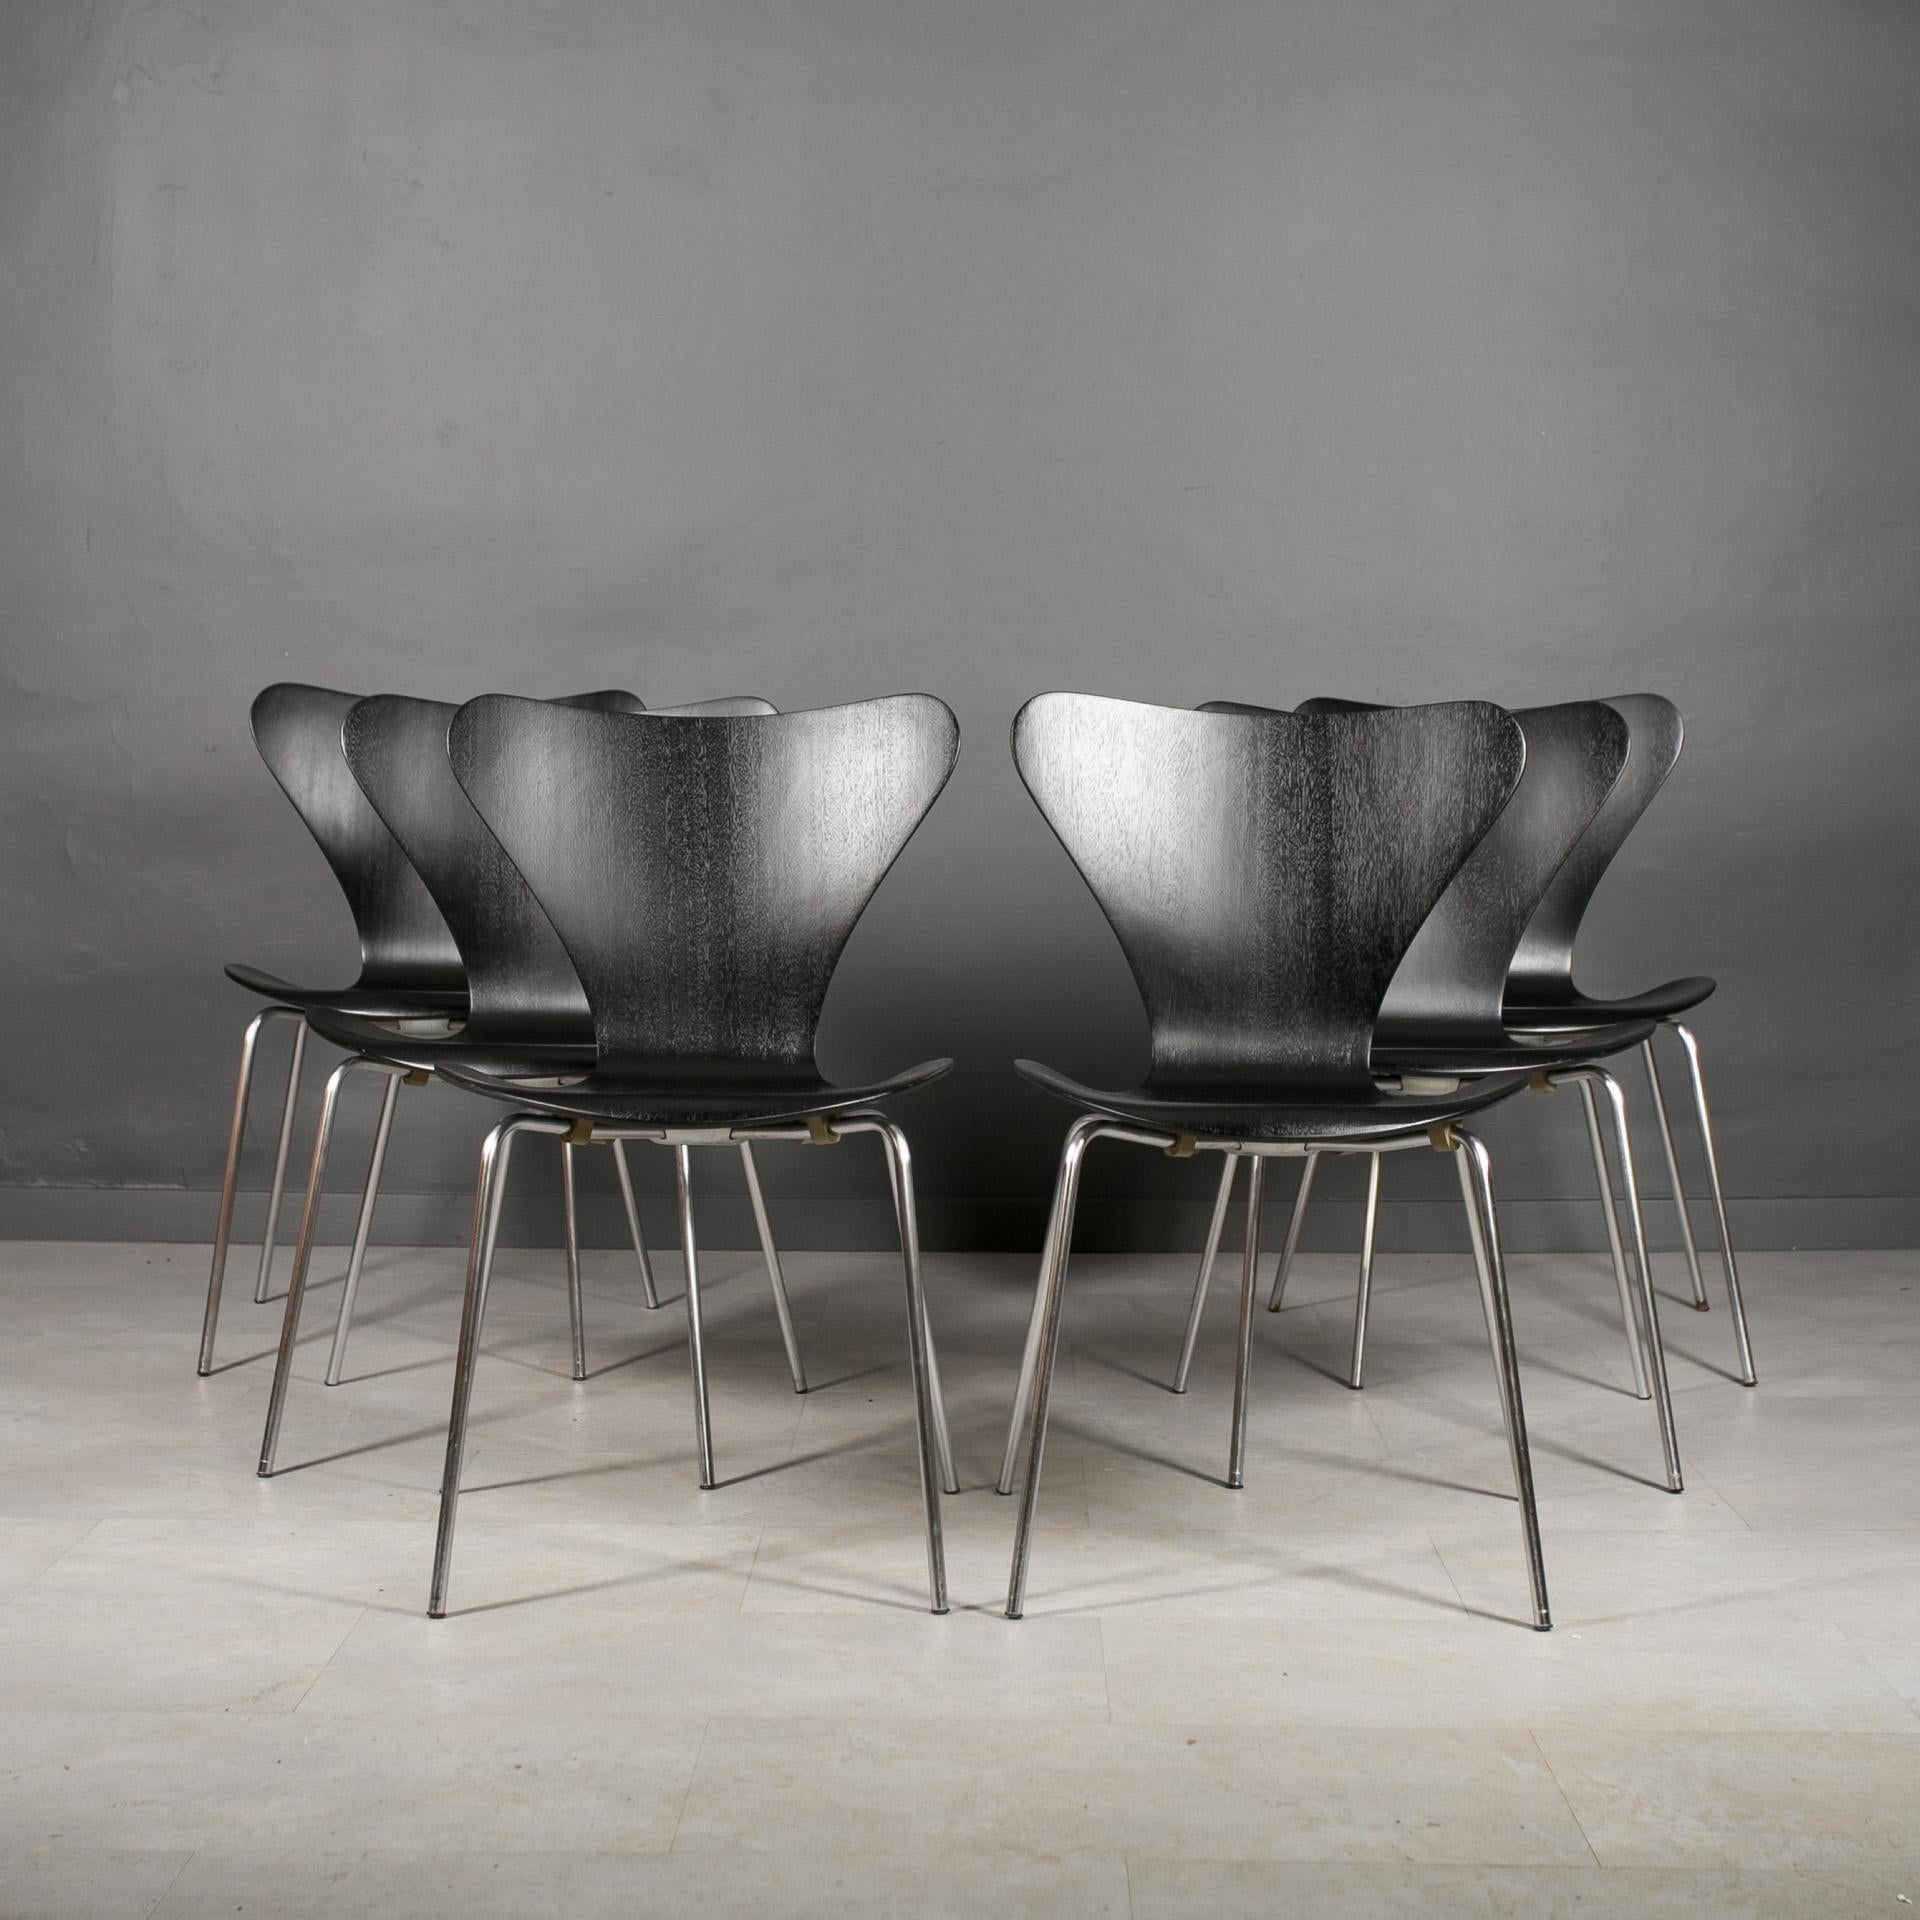 Élevez votre espace avec l'élégance intemporelle de la chaise 3107 de Fritz Hansen, un chef-d'œuvre né du génie créatif du designer Arne Jacobsen en 1955. Cette chaise emblématique de la Série 7™ allie harmonieusement forme et fonction, ce qui en